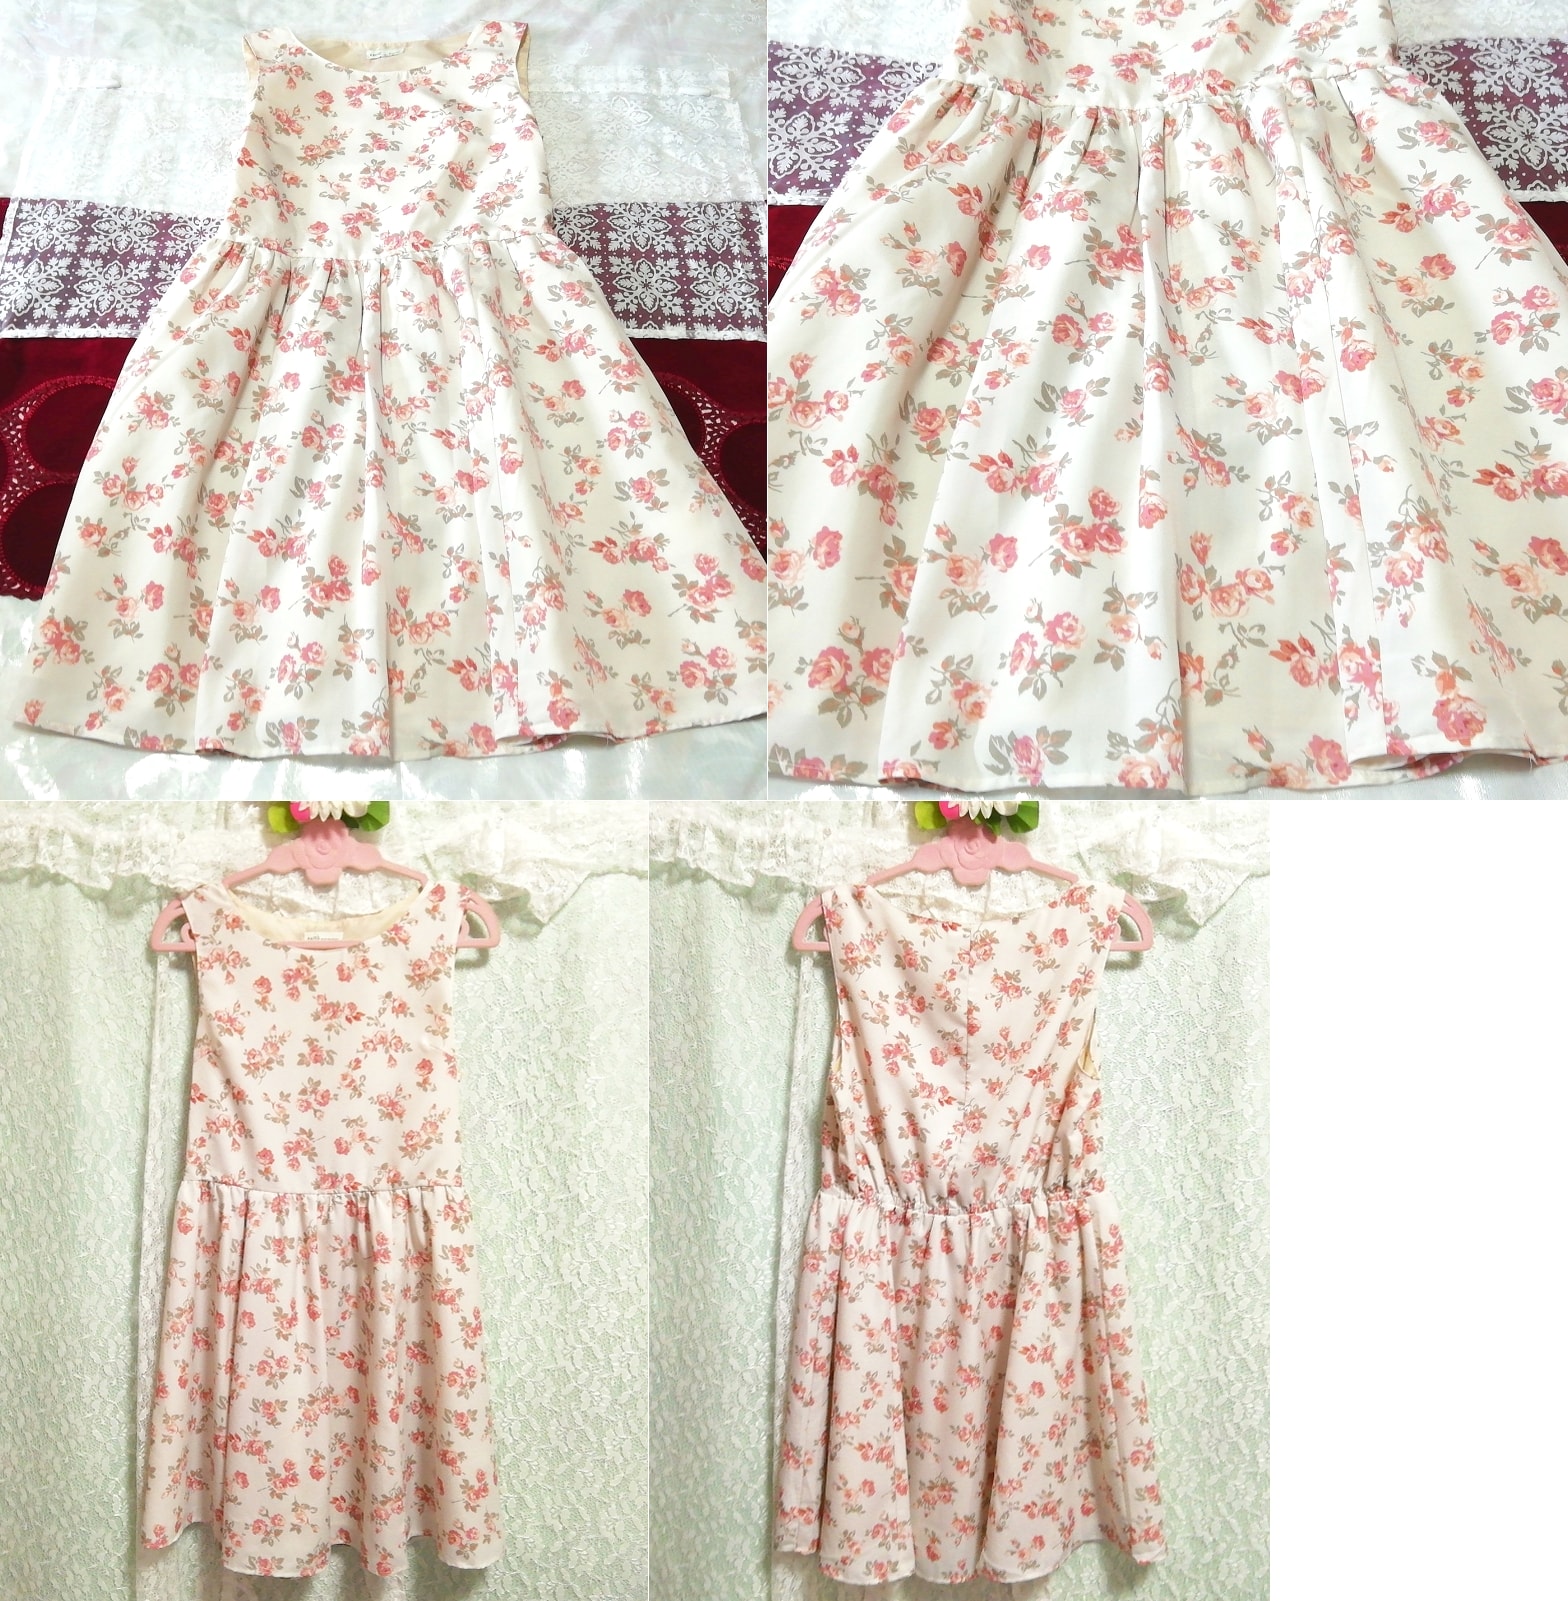 فستان نوم قصير منقوش عليه زهور باللون الأبيض الوردي بدون أكمام, تنورة قصيرة, حجم م